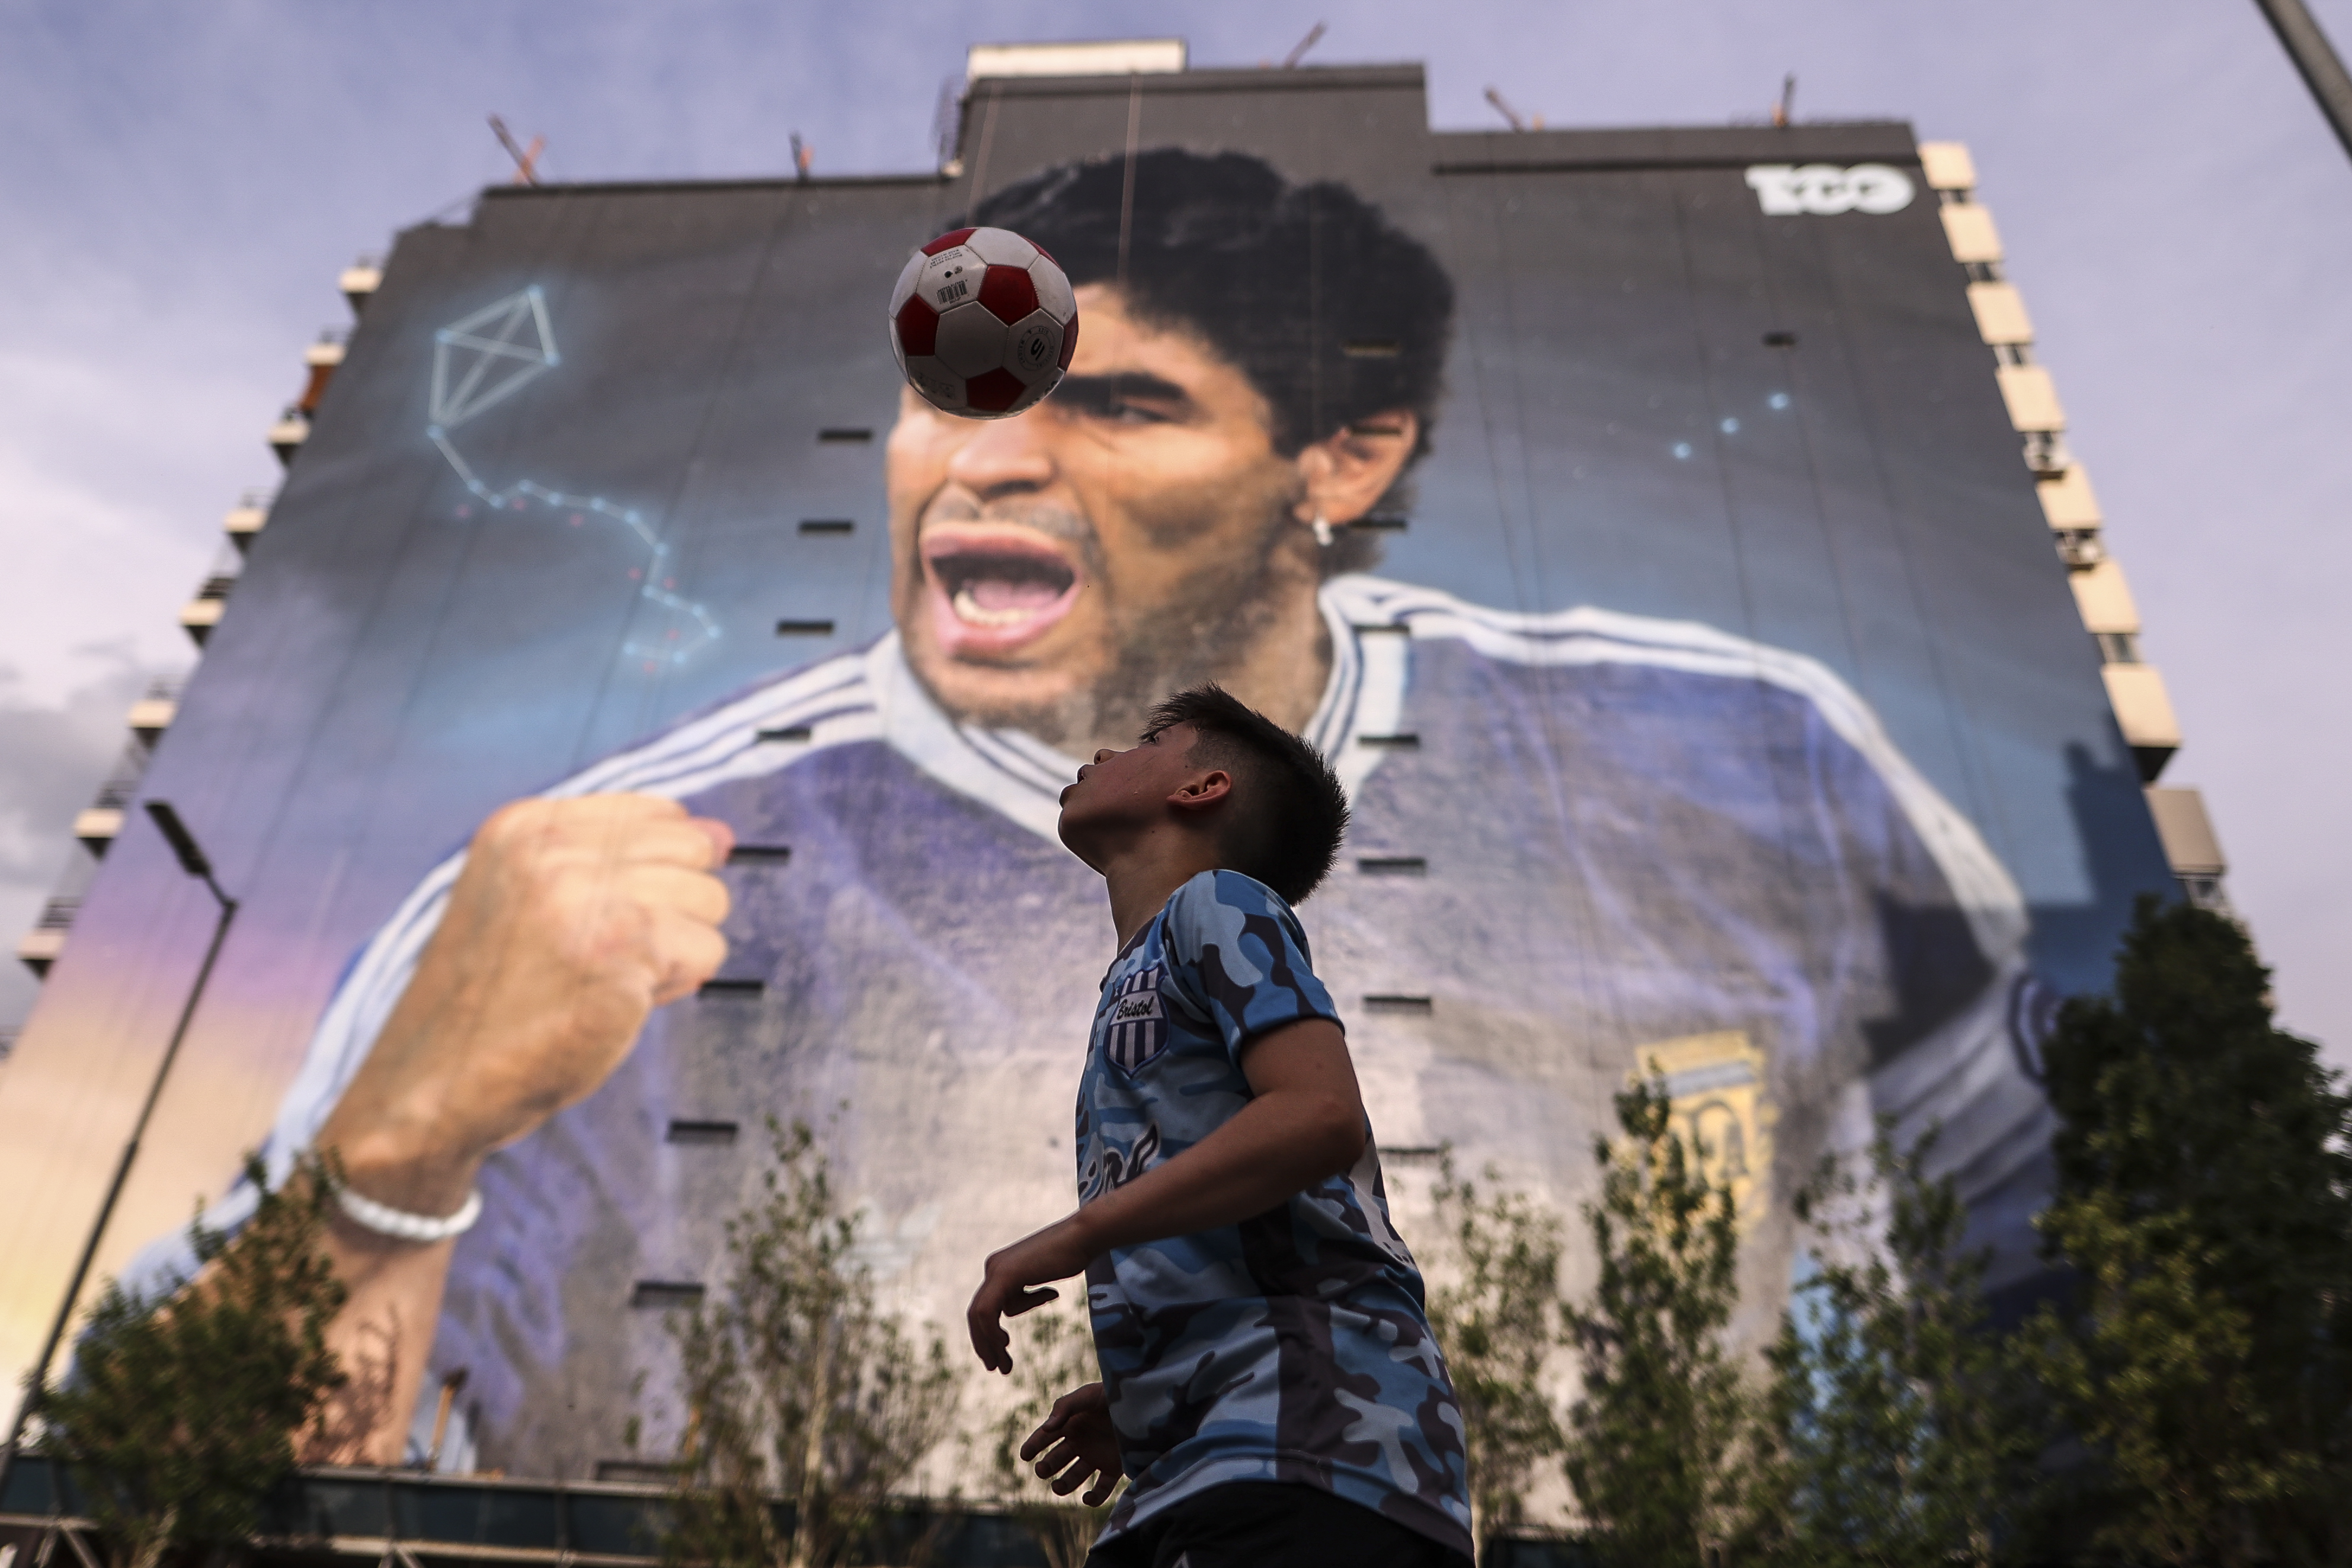 El rostro de Maradona roza la "inmensidad" de los cielos